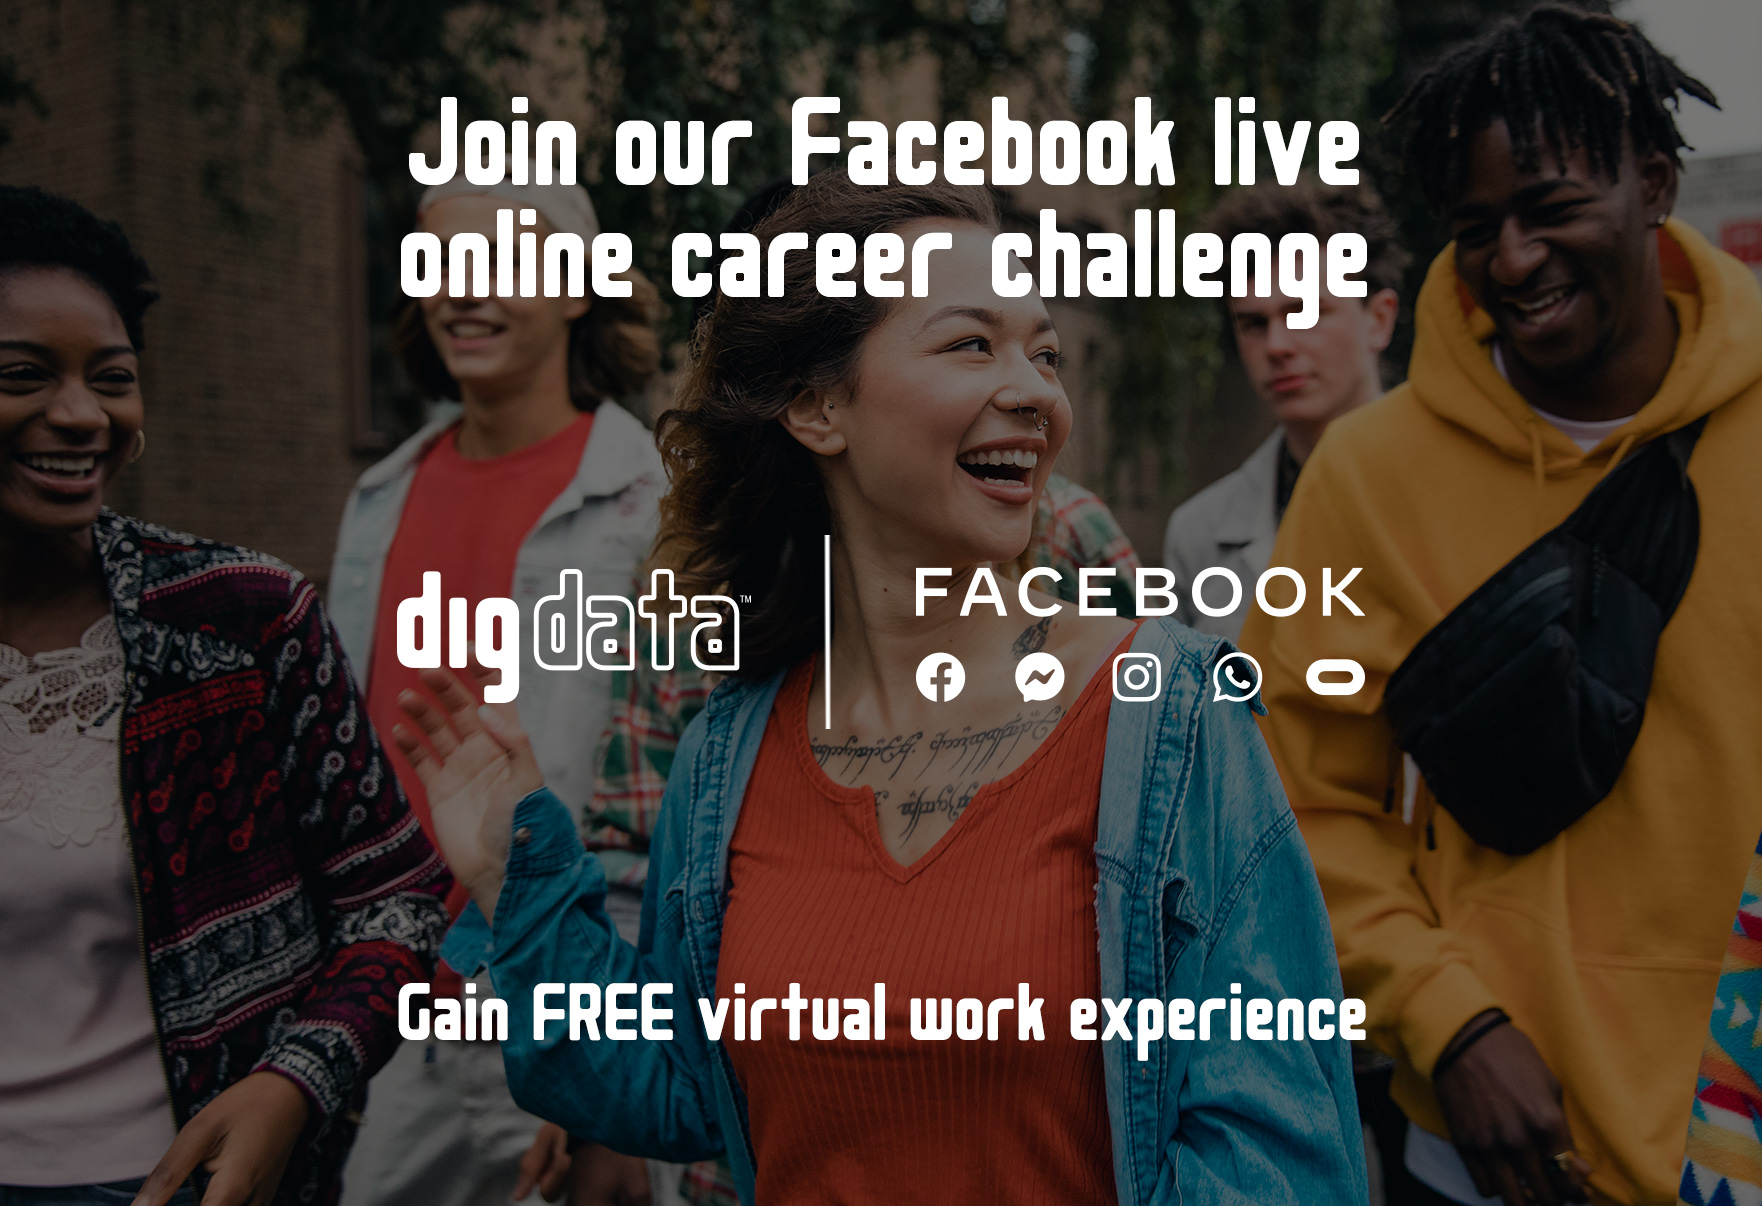 Facebook Live Online Career-Challenge News story